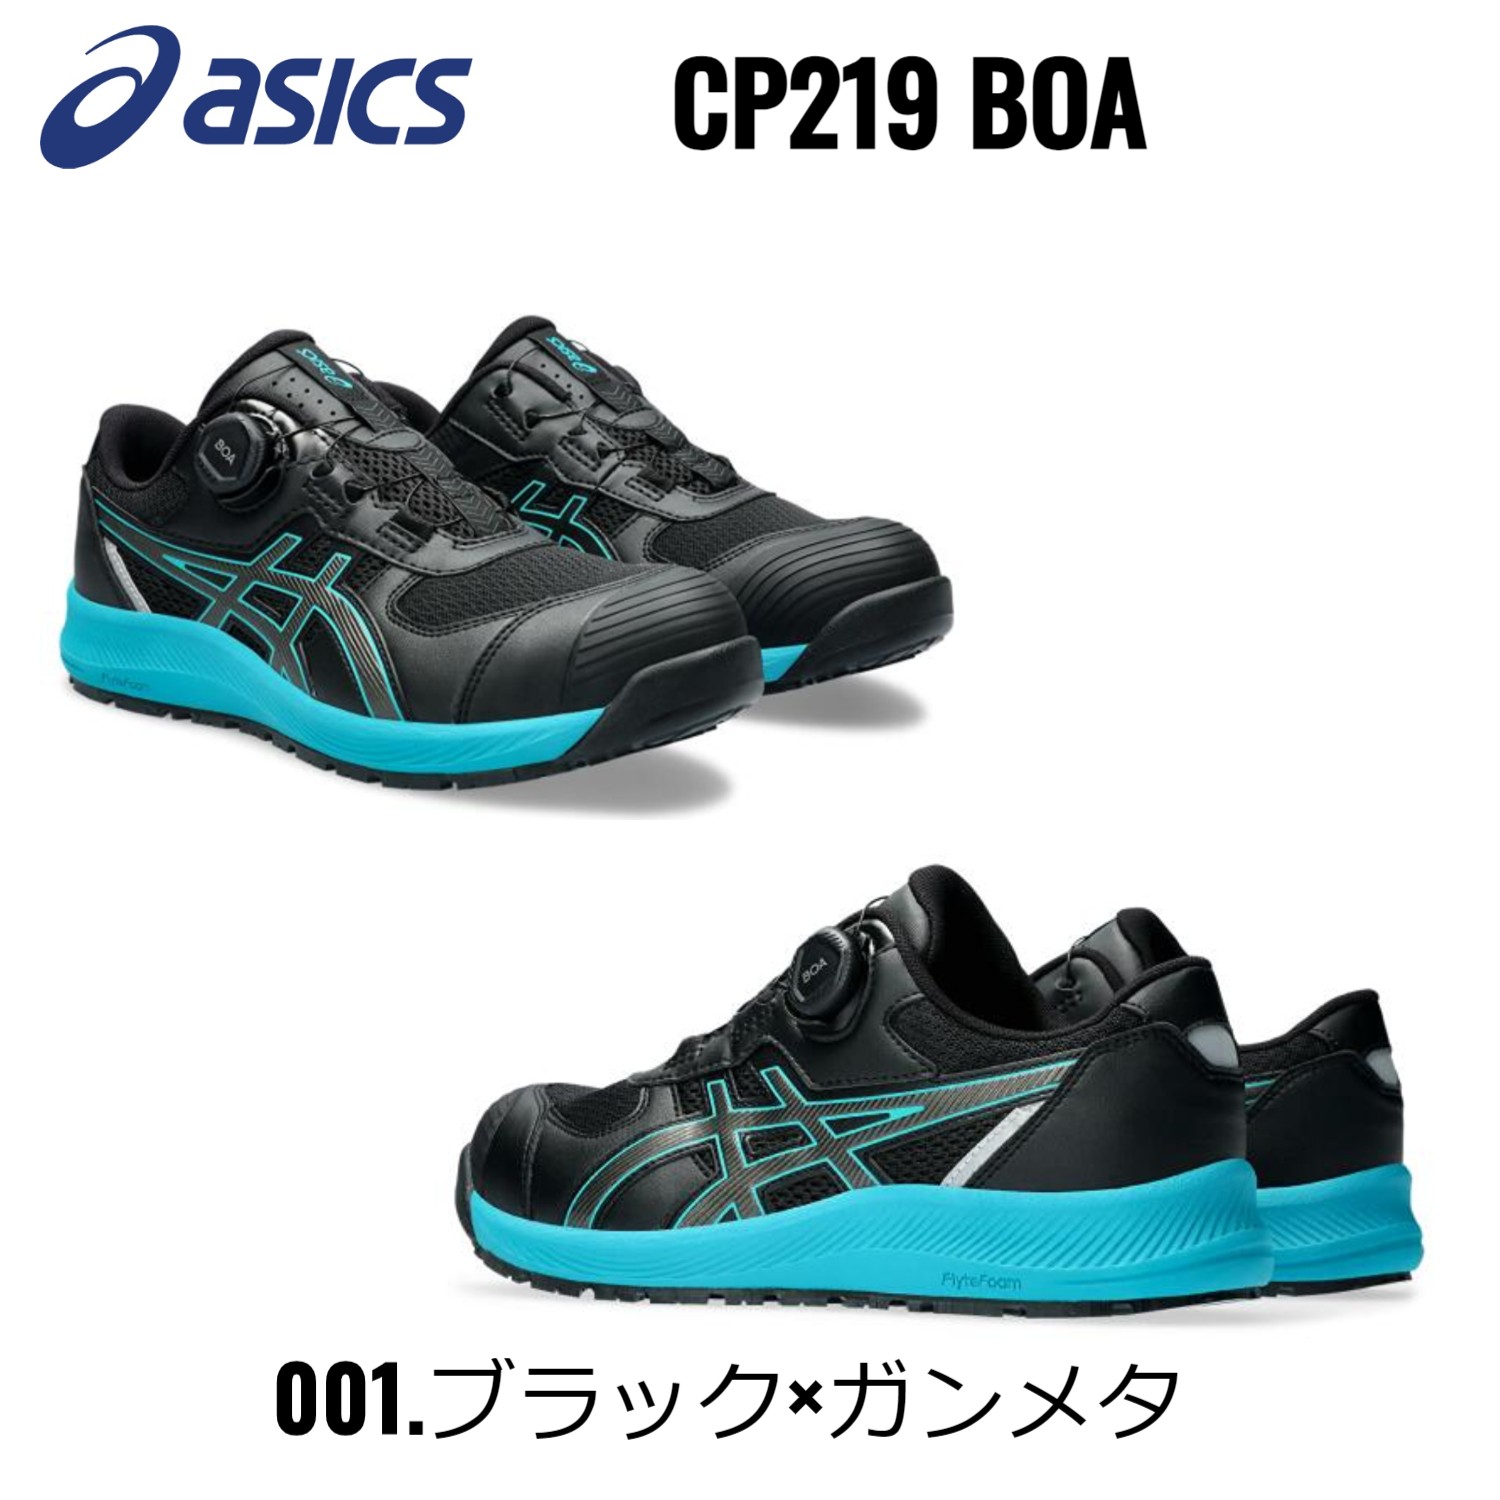 【期間限定価格】アシックス 安全靴 限定カラー ローカット ウィンジョブ asics CP219 B...